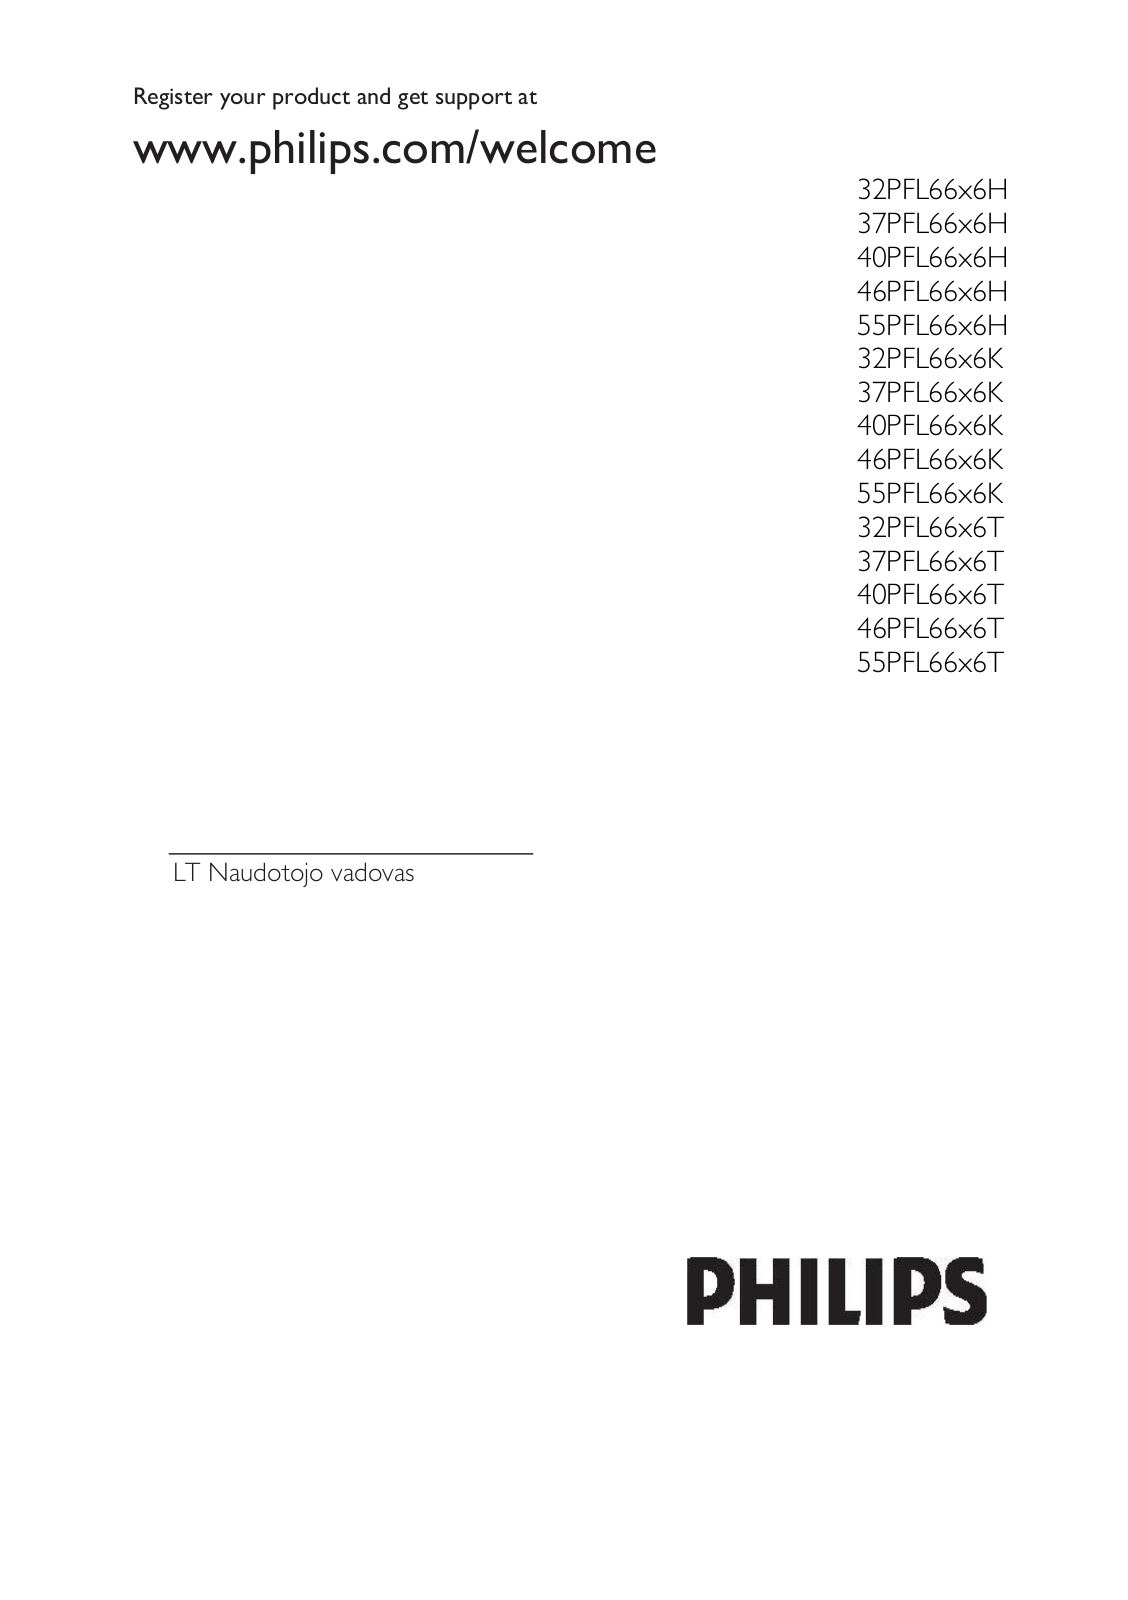 Philips 37PFL66x6H, 40PFL66x6H, 46PFL66x6H, 55PFL66x6H, 32PFL66x6K User Manual